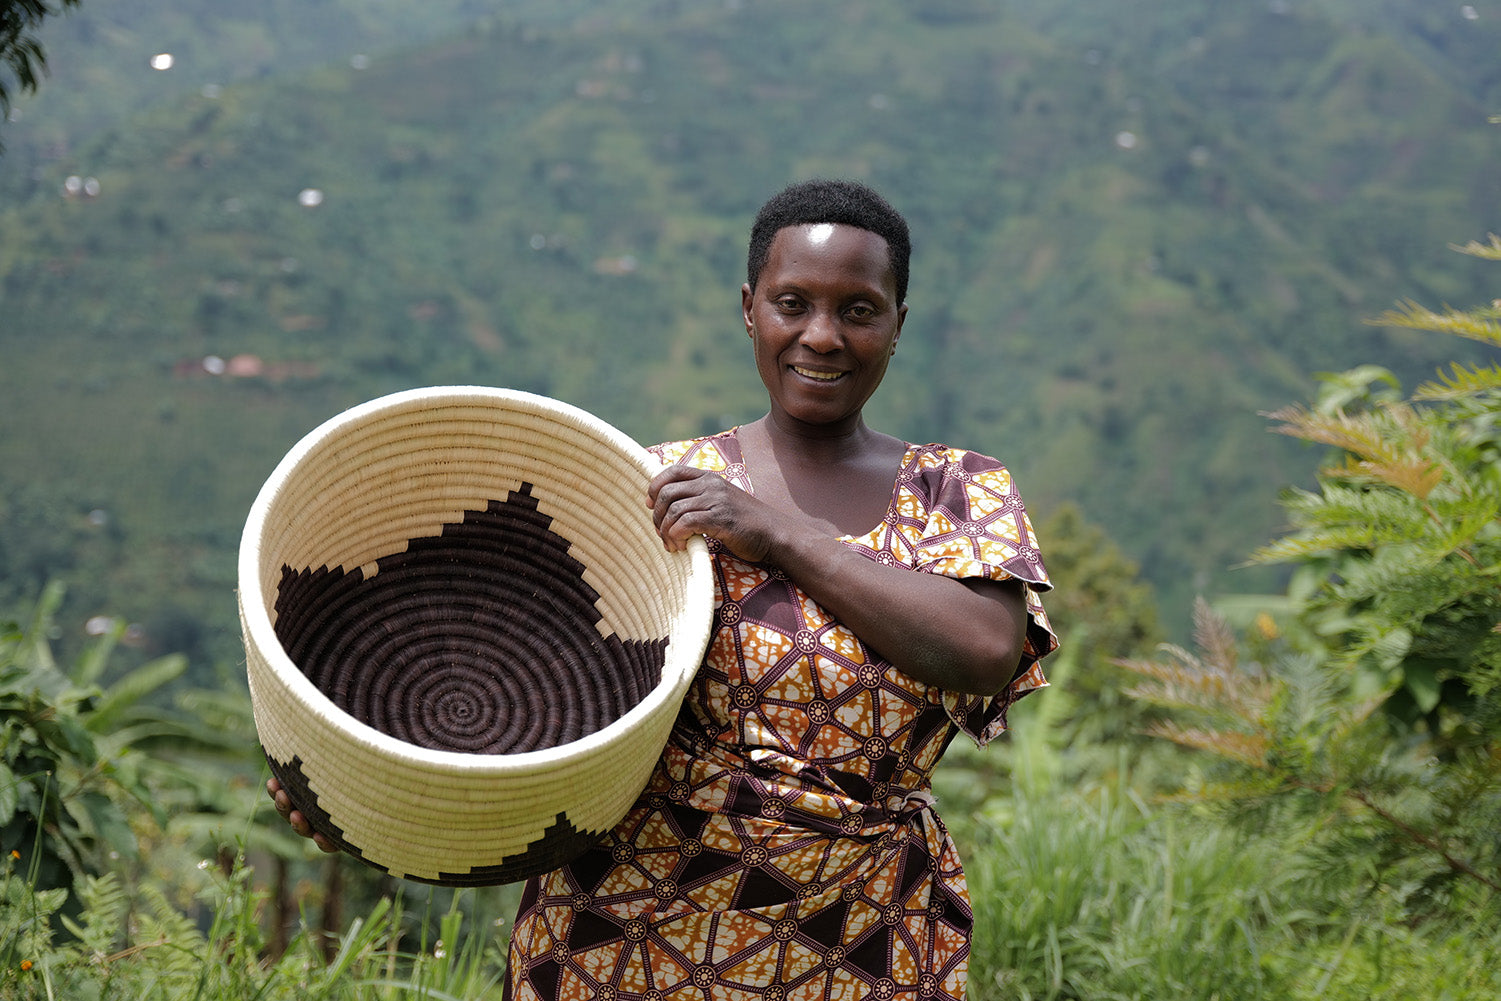 Basket weaver of Kasese